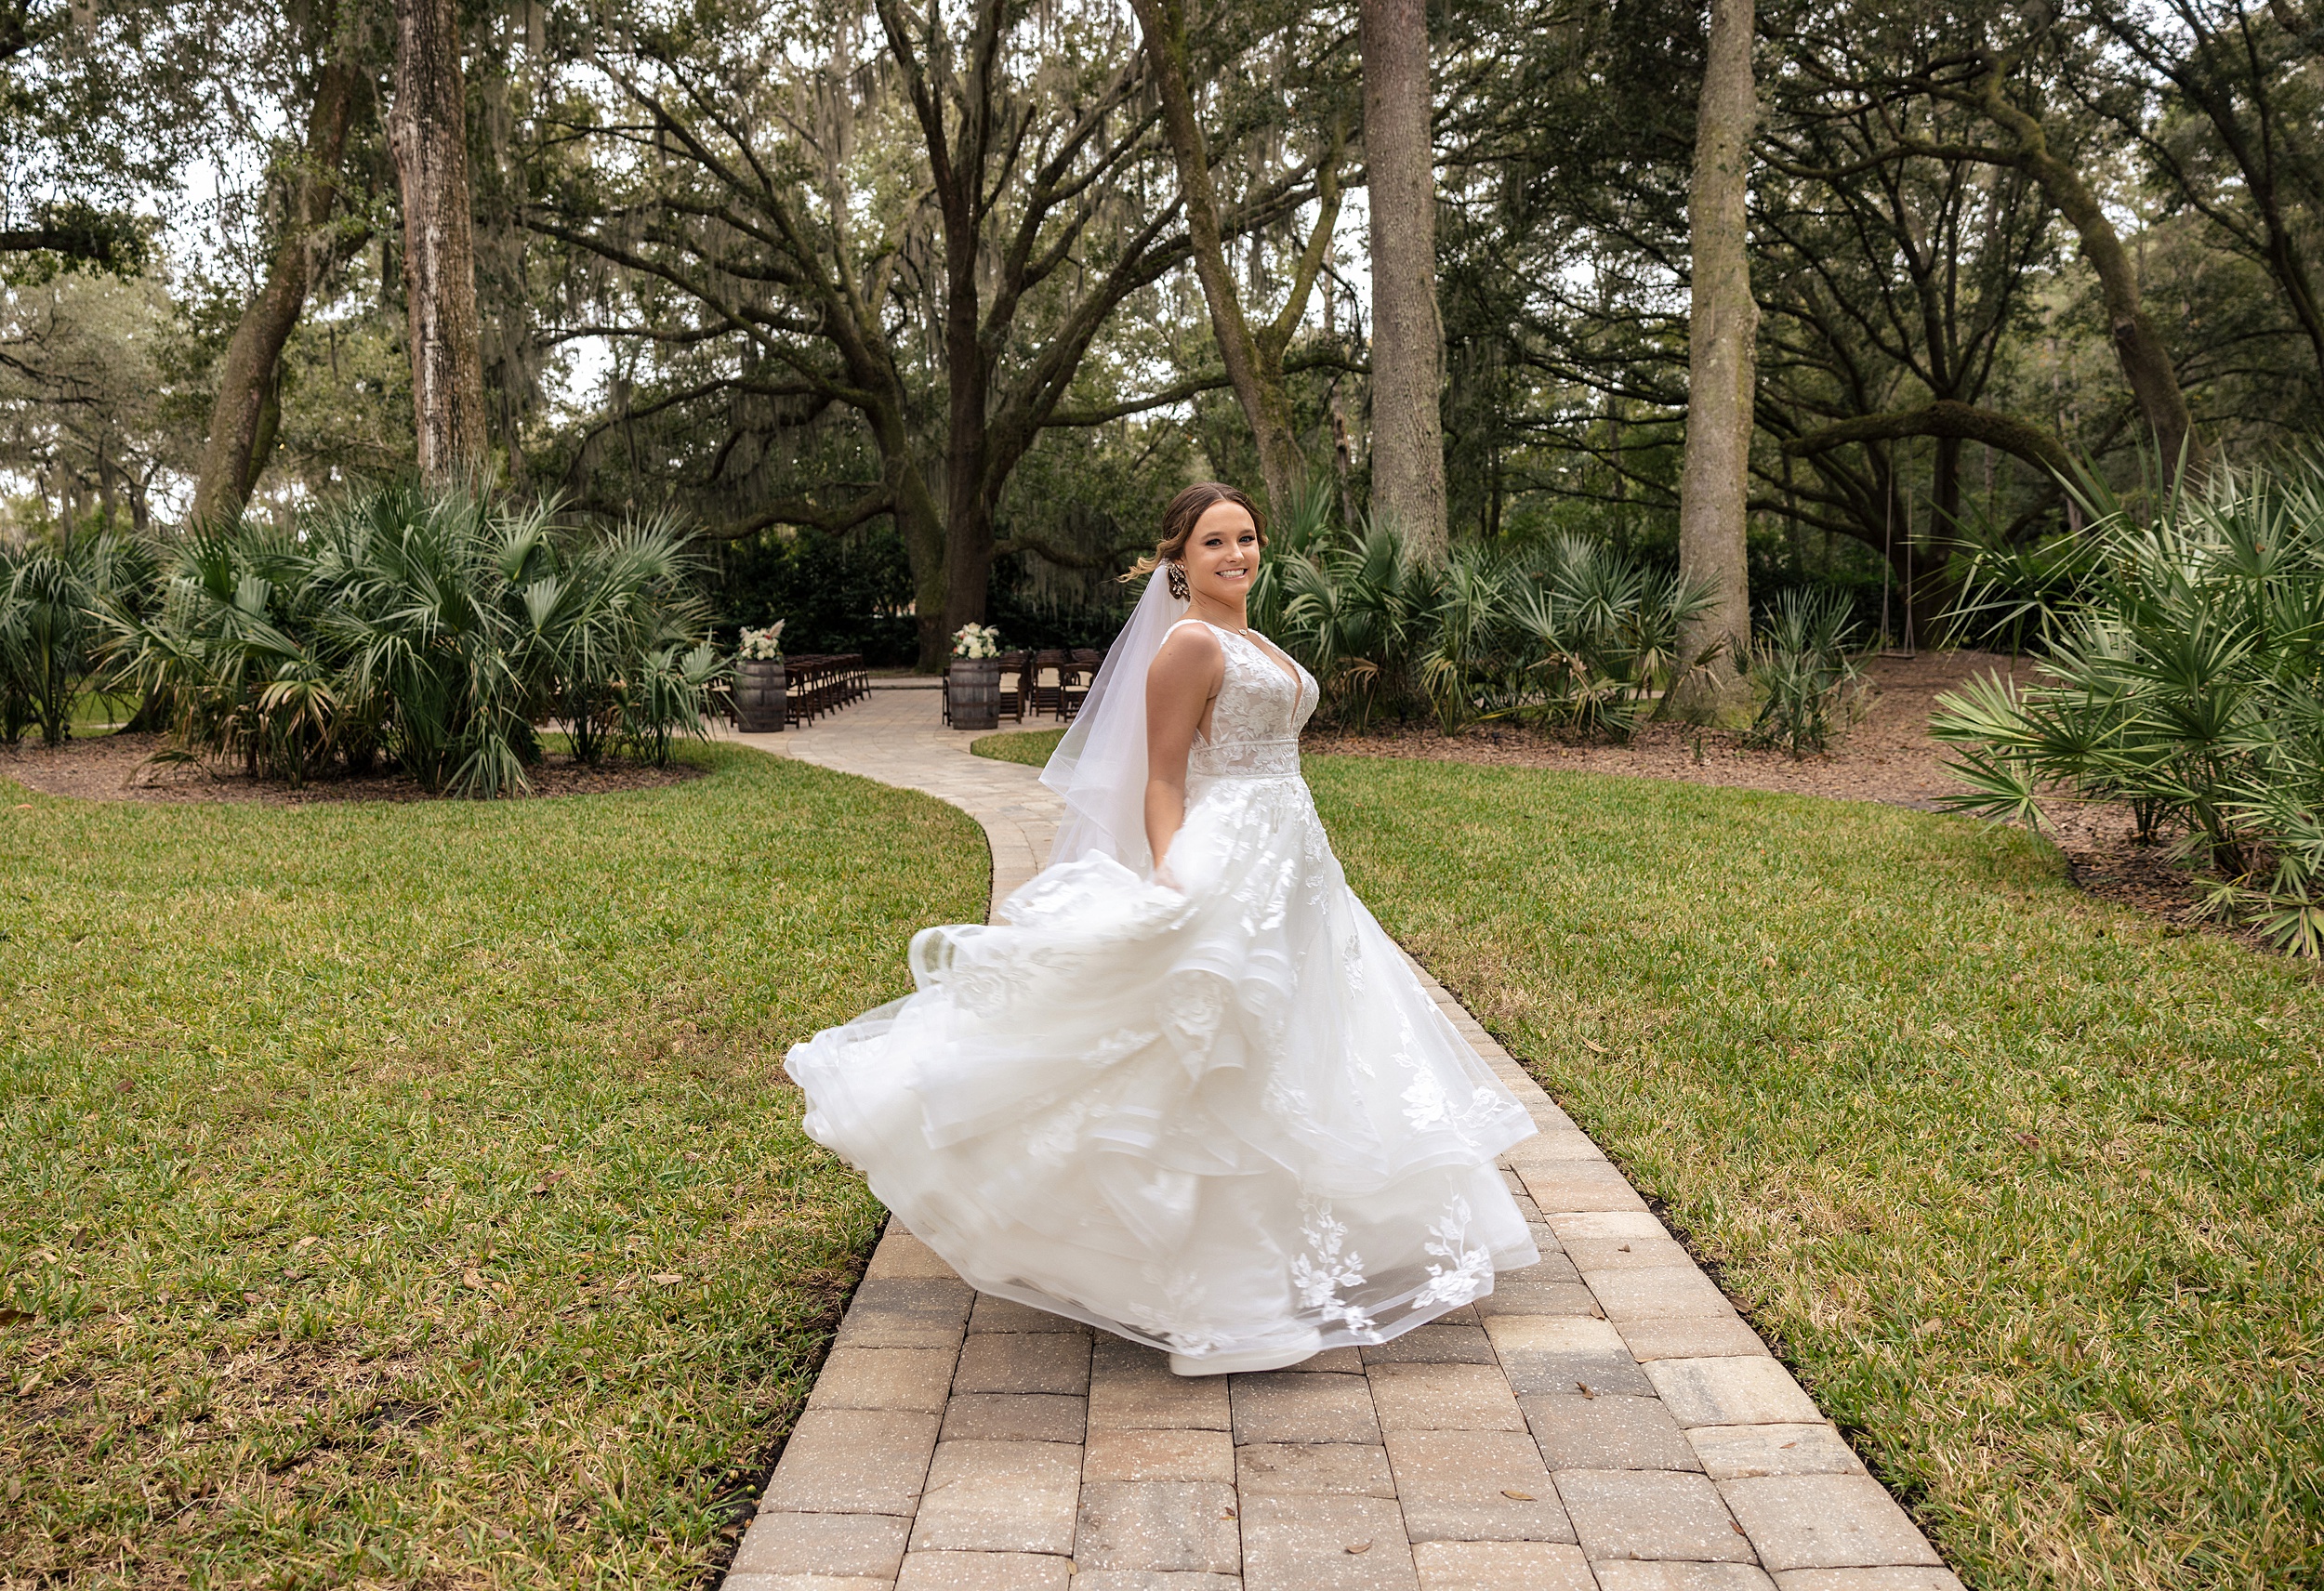 A bride twirls in her dress on a patio walkway under oak trees